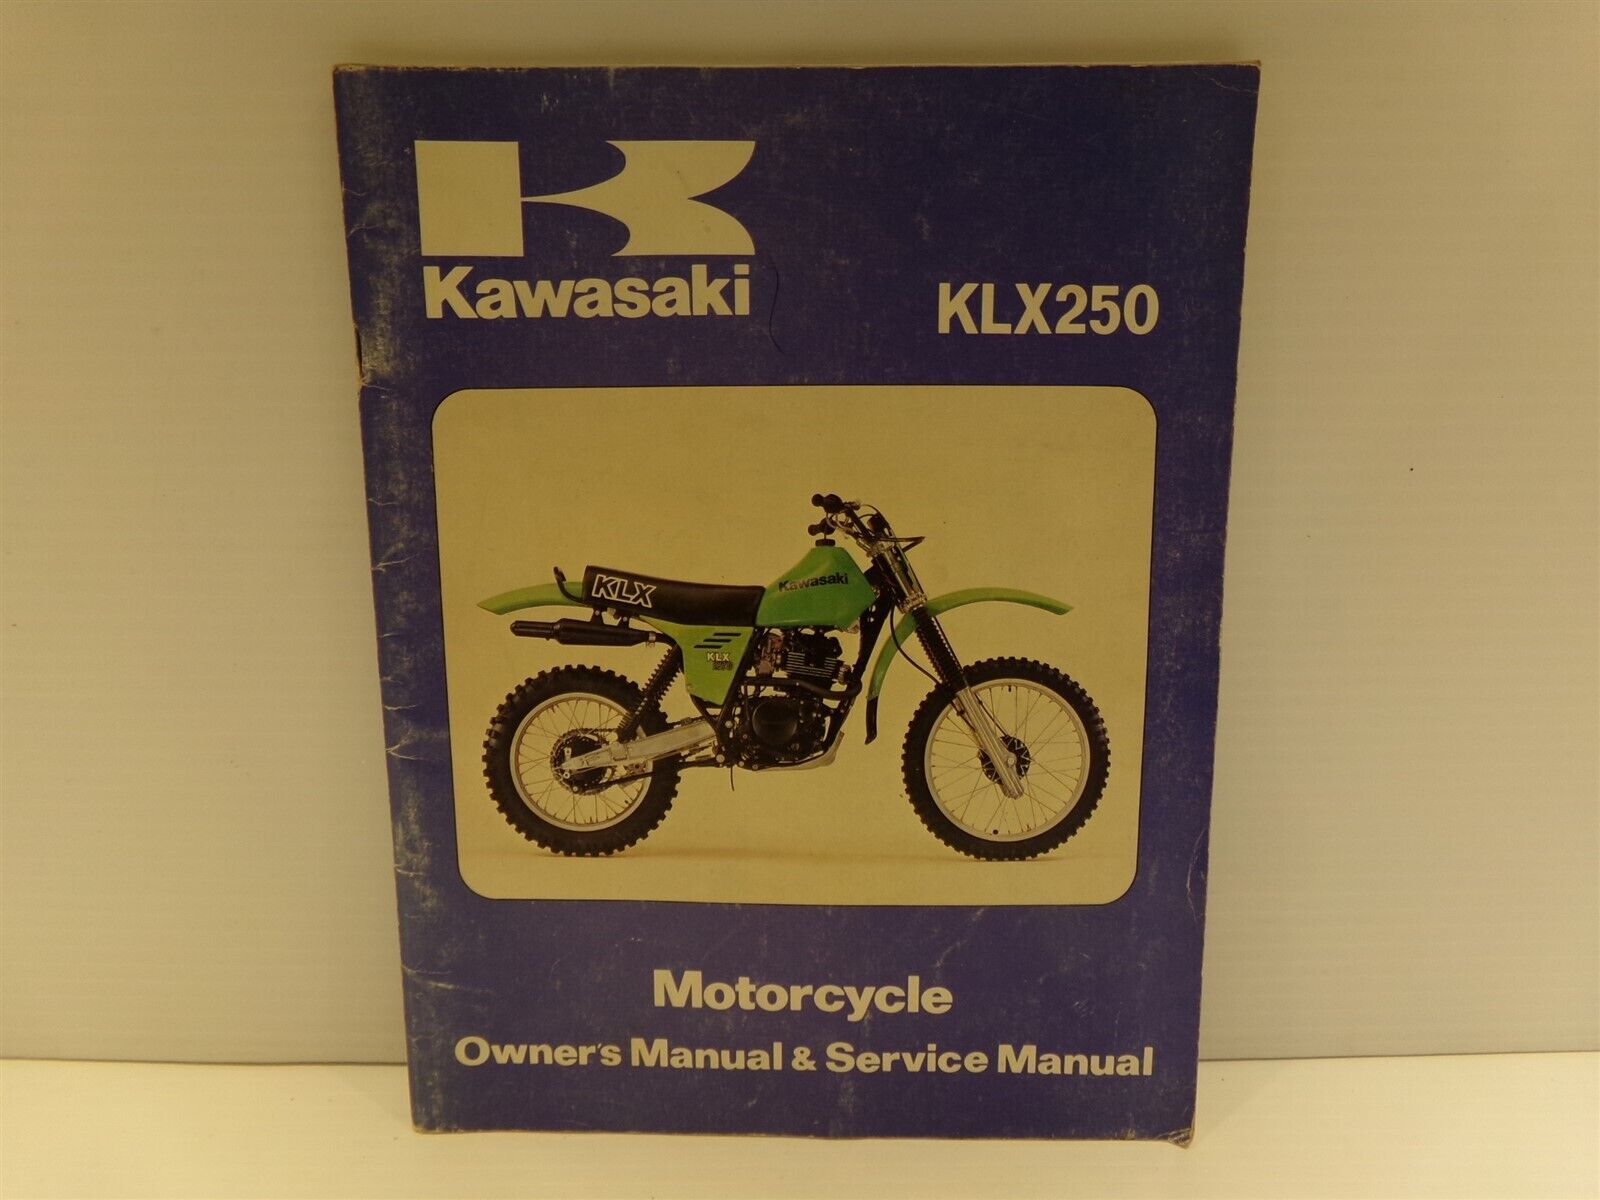 Kawasaki KLX250 Motorcycle Owner's Manual & Service Manual 1979 - $17.99